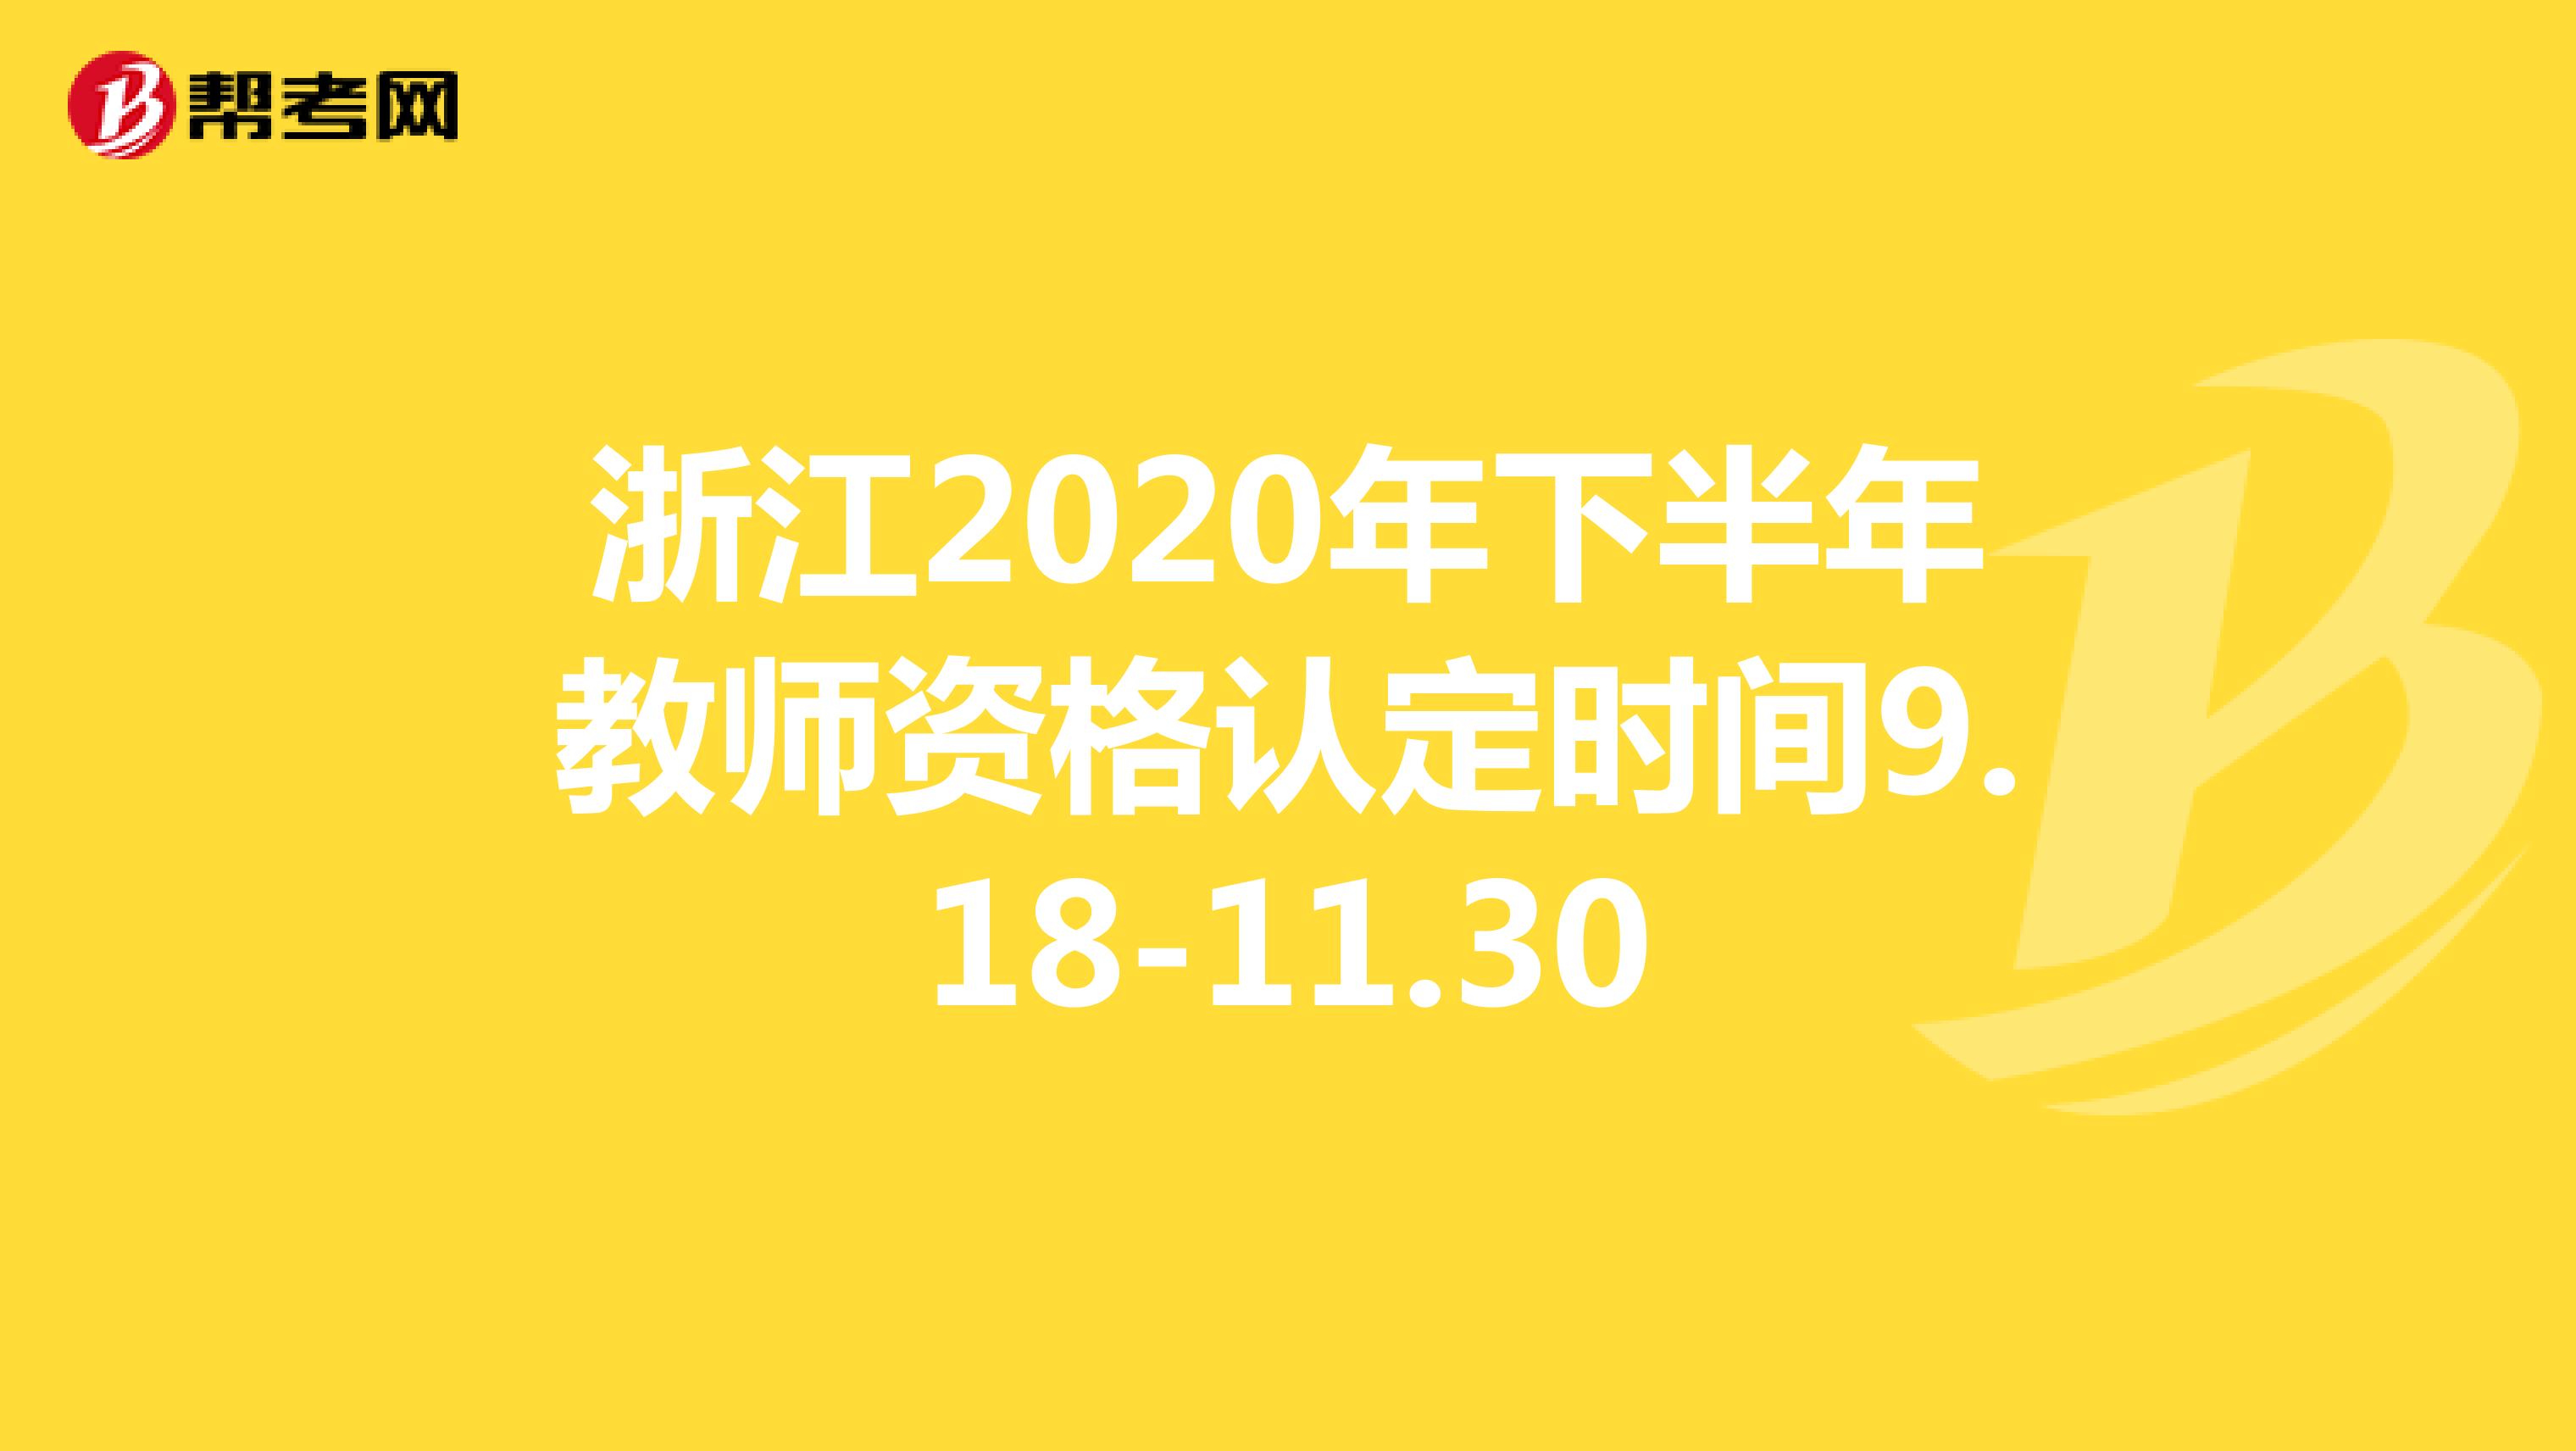 浙江2020年下半年教师资格认定时间9.18-11.30